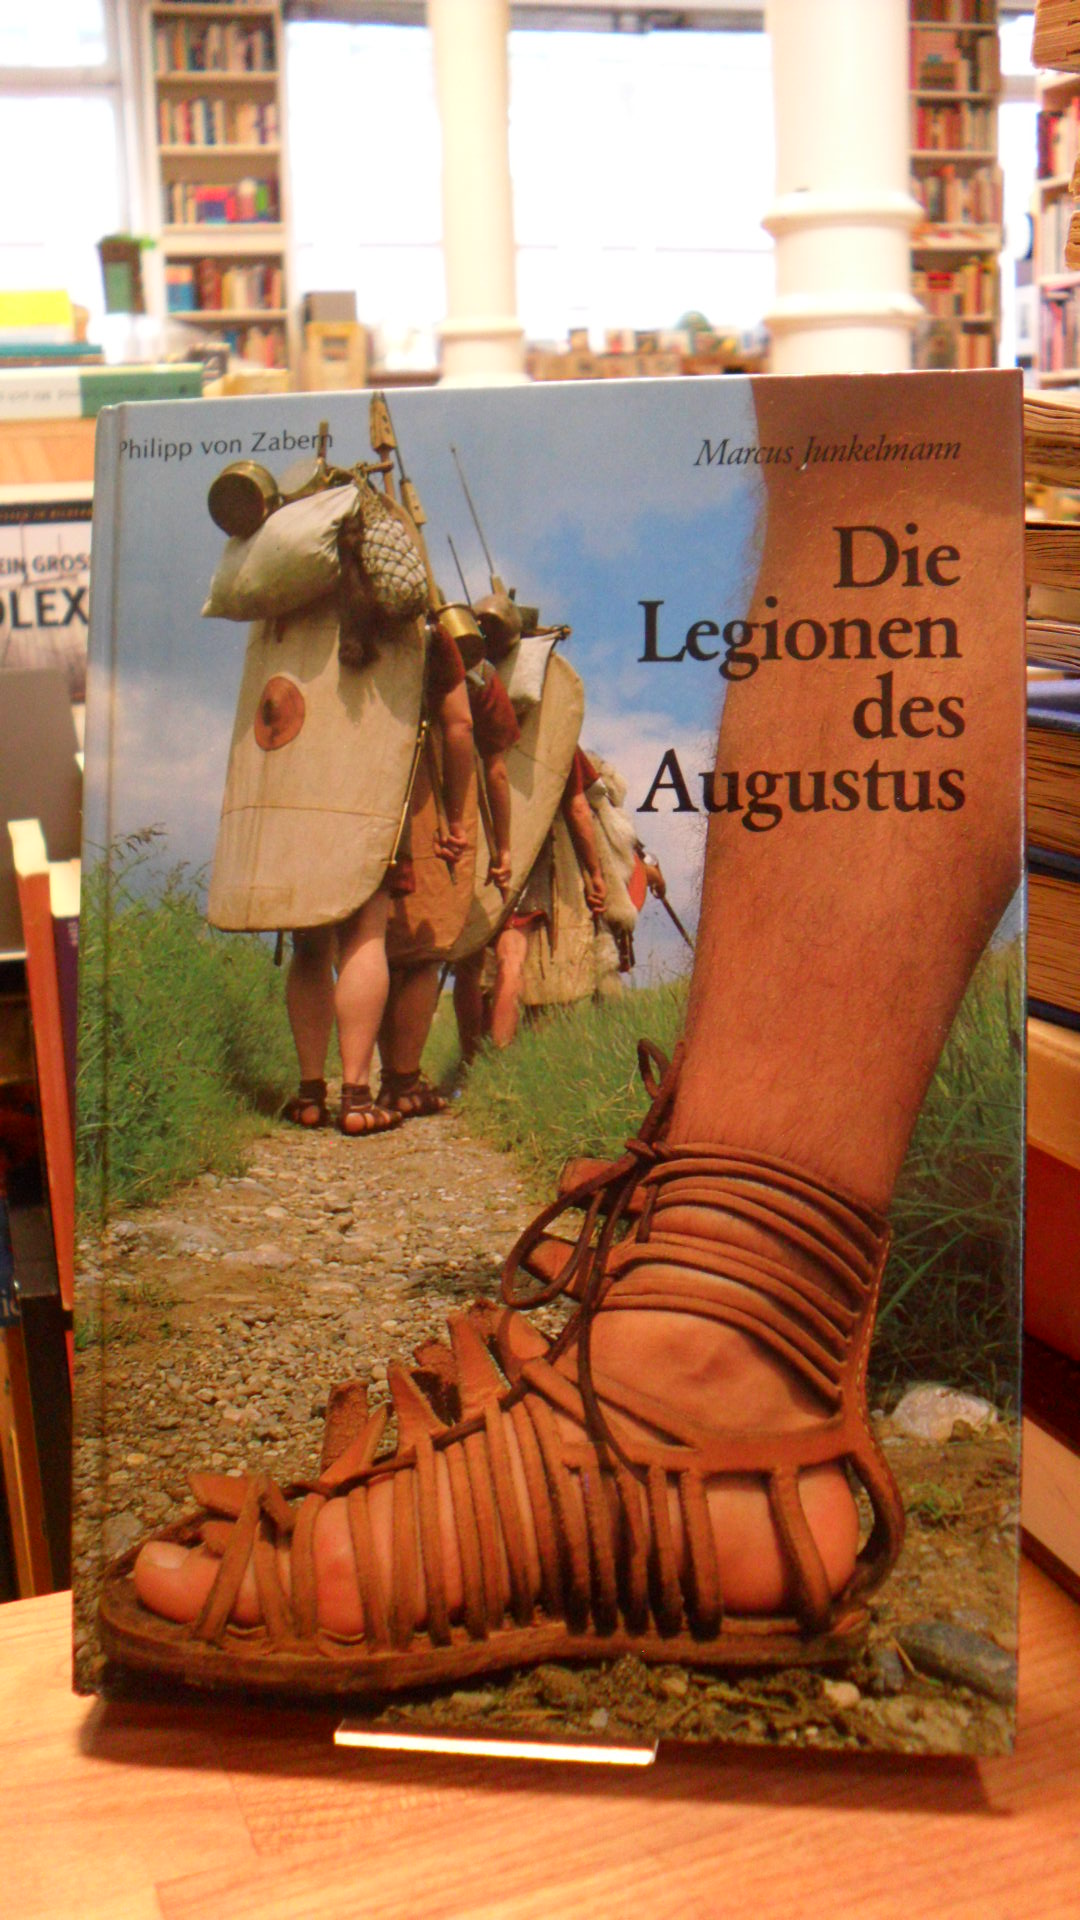 Junkelmann, Die Legionen des Augustus – Der römische Soldat im archäologischen E